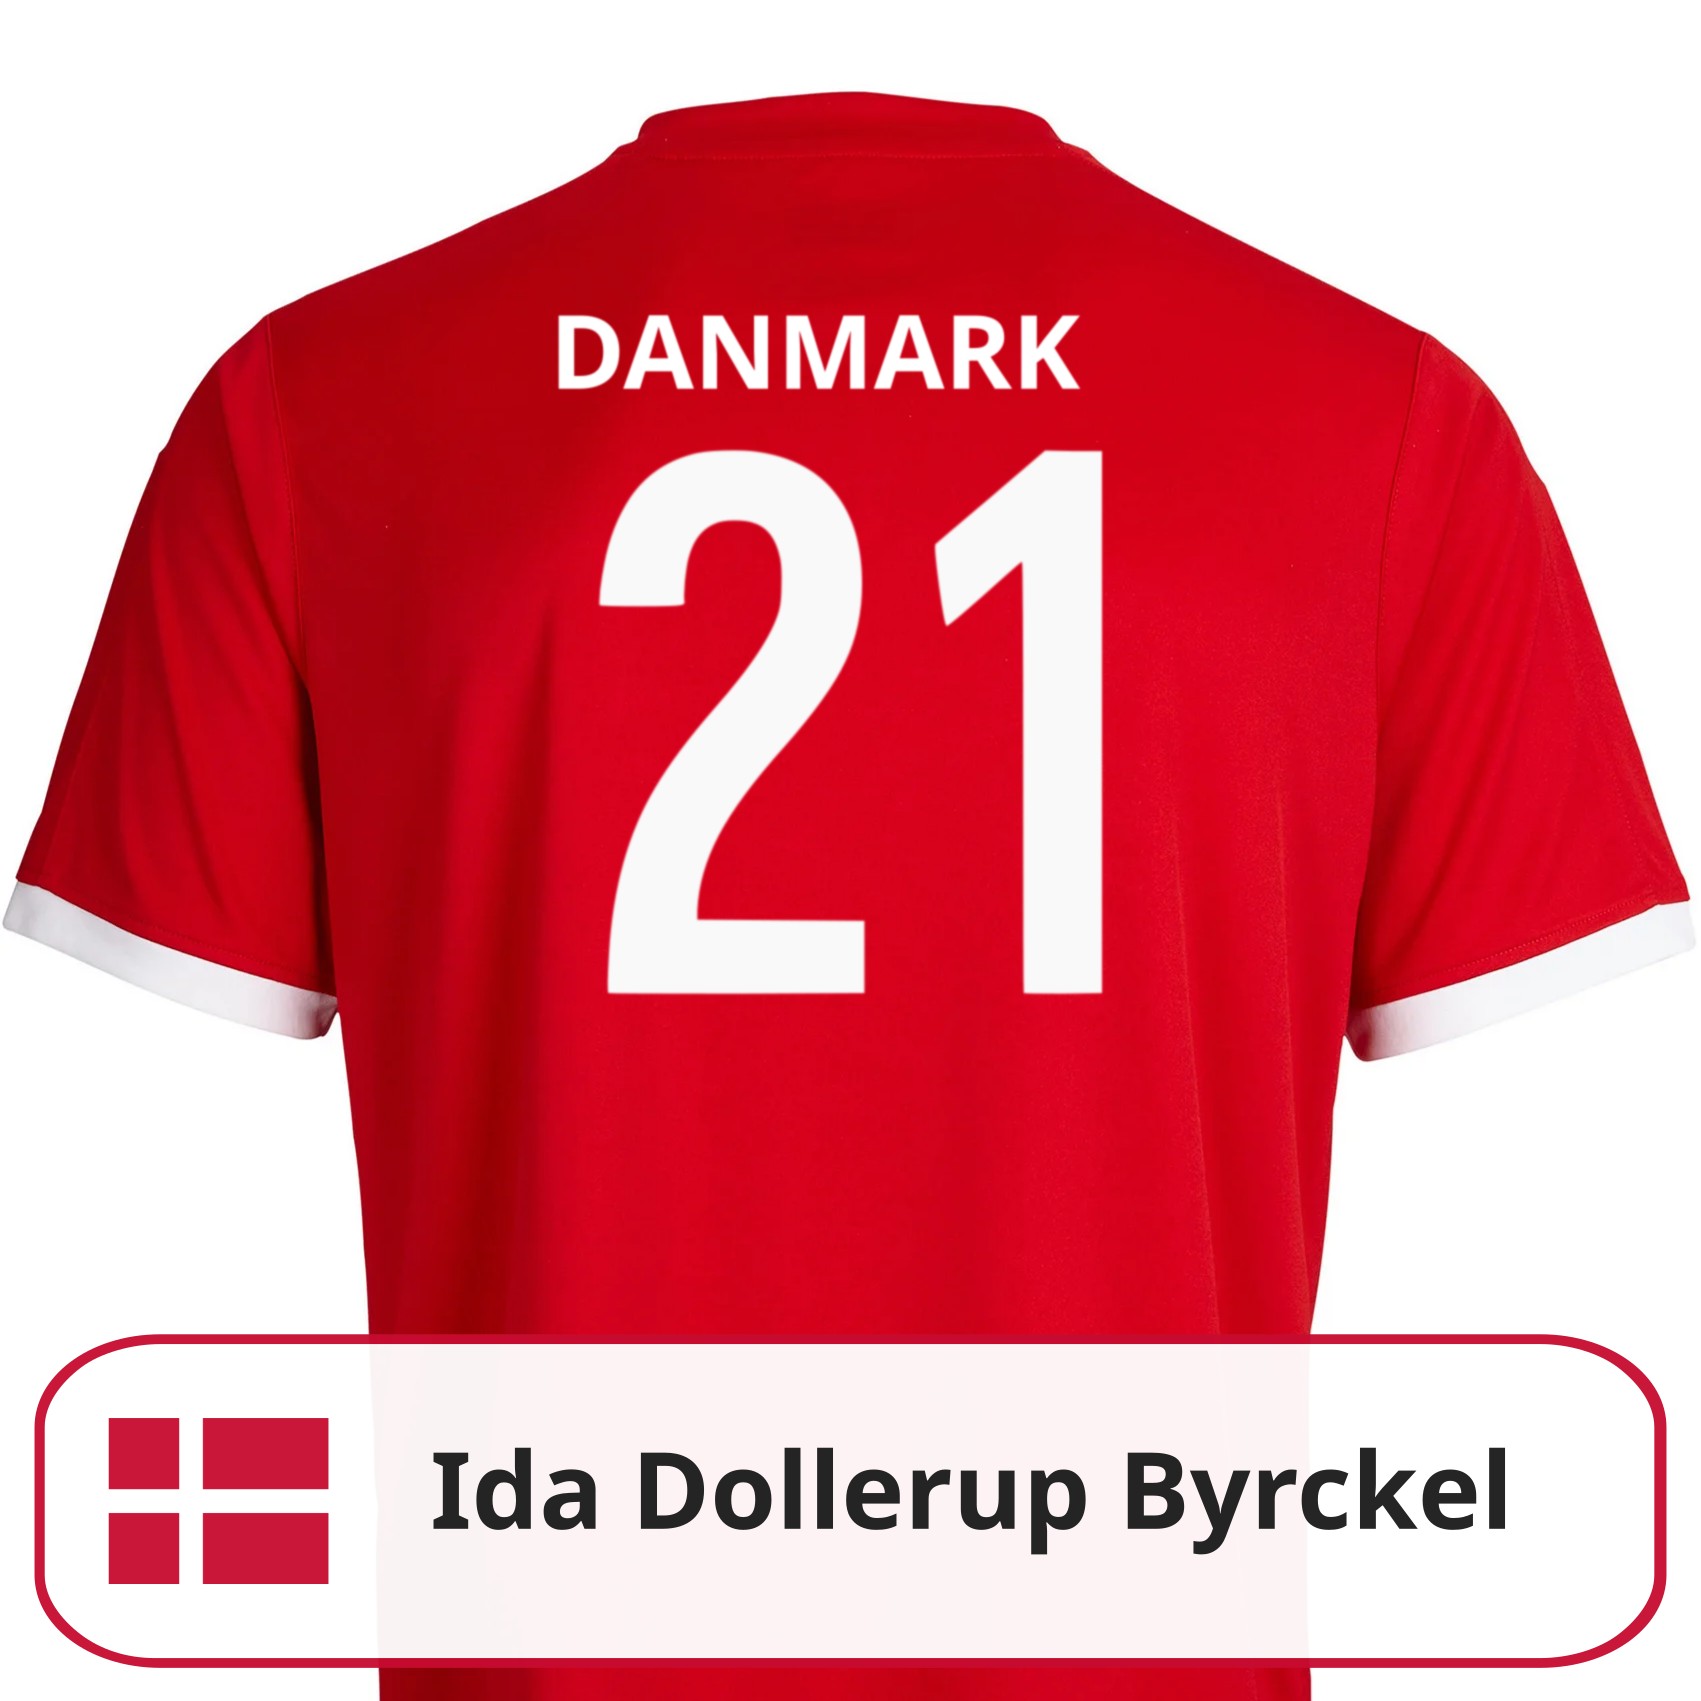 Ida Dollerup Byrckel